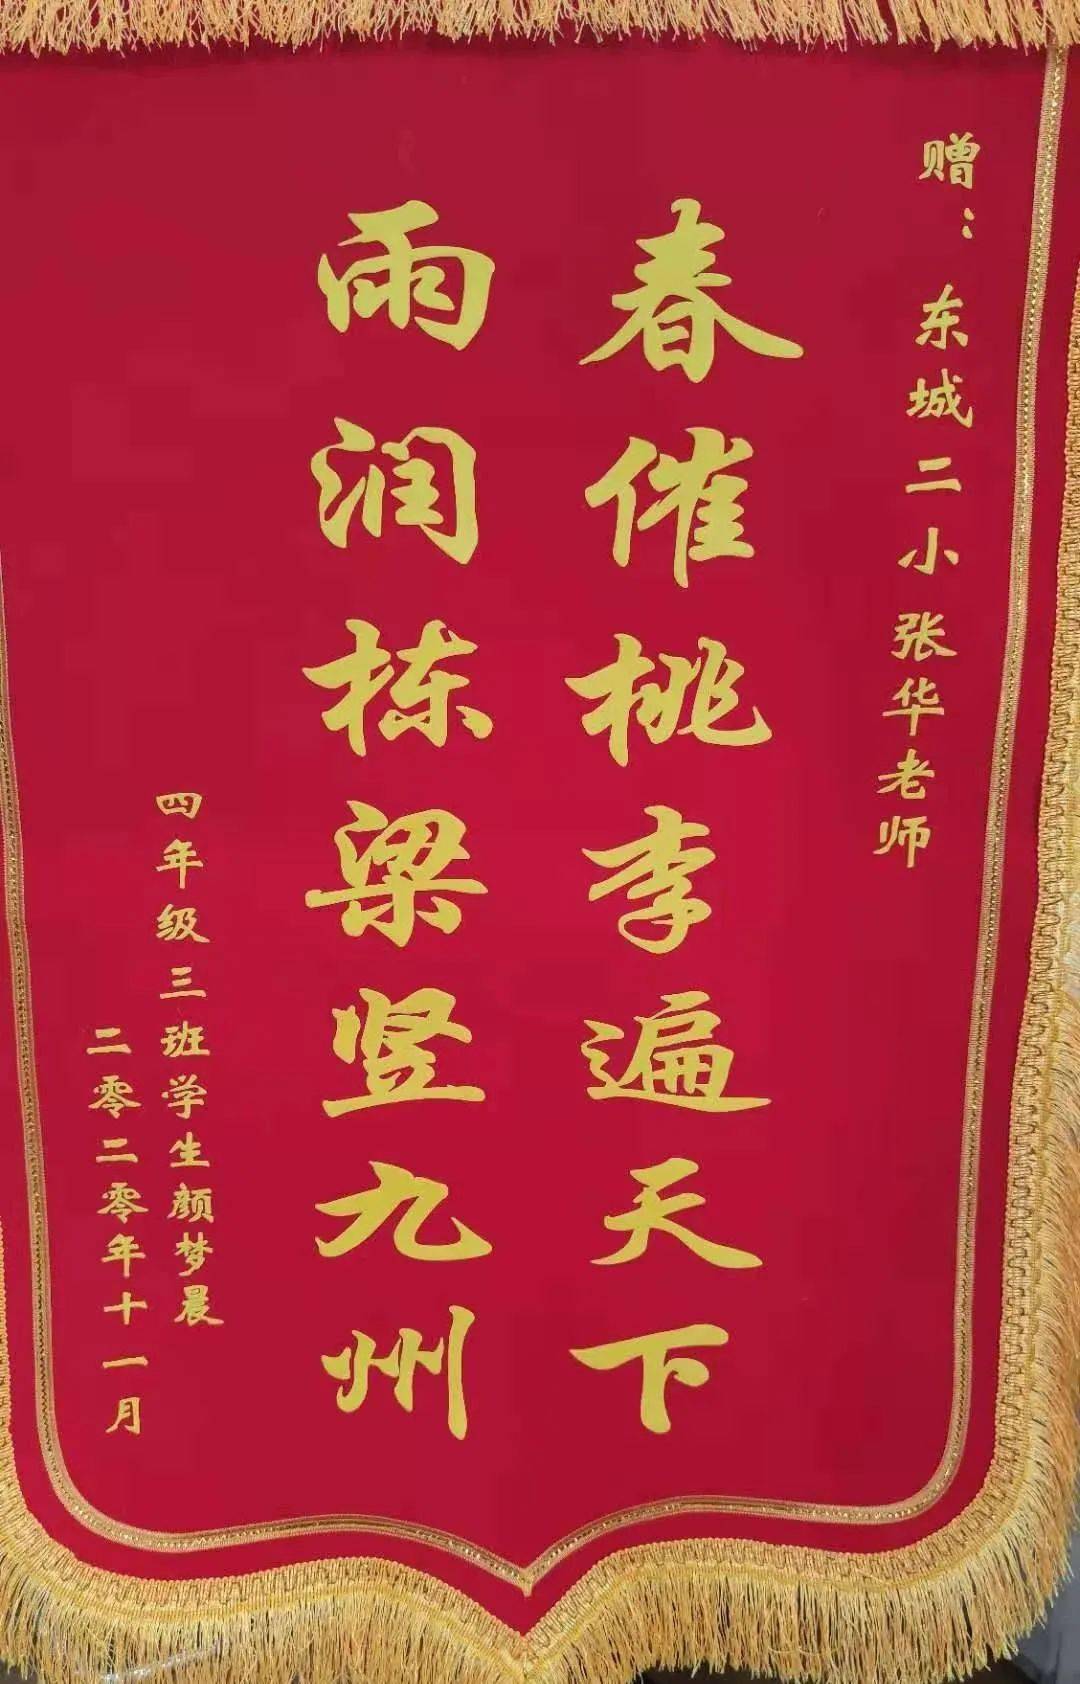 雨润栋梁遍九州的锦旗送到了张华老师的手中